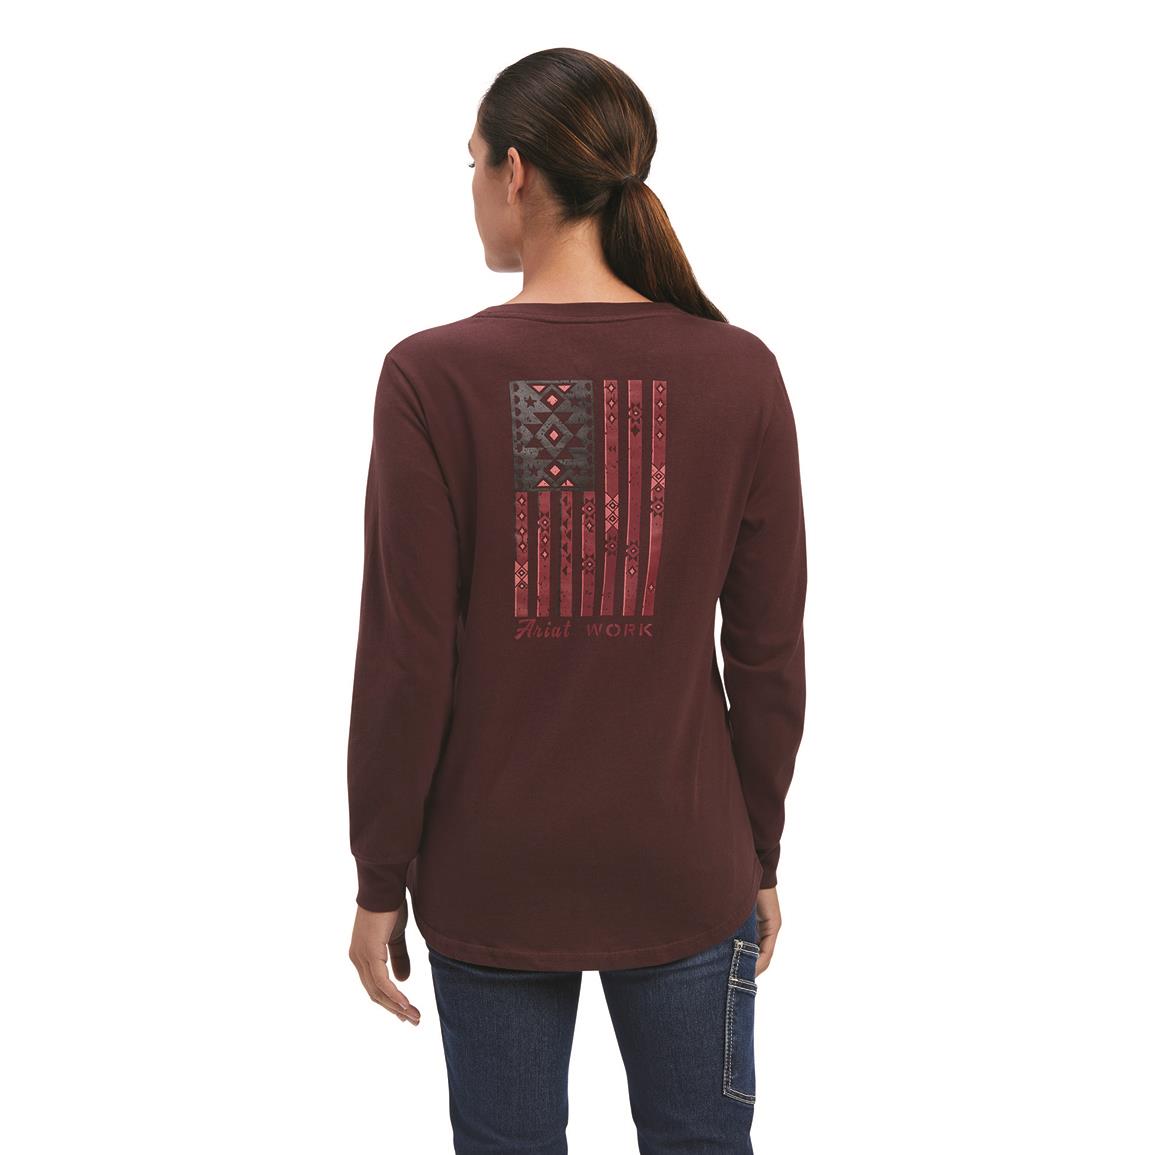 Ariat Women's Rebar CottonStrong Southwest Shirt, Decadent Chocolate